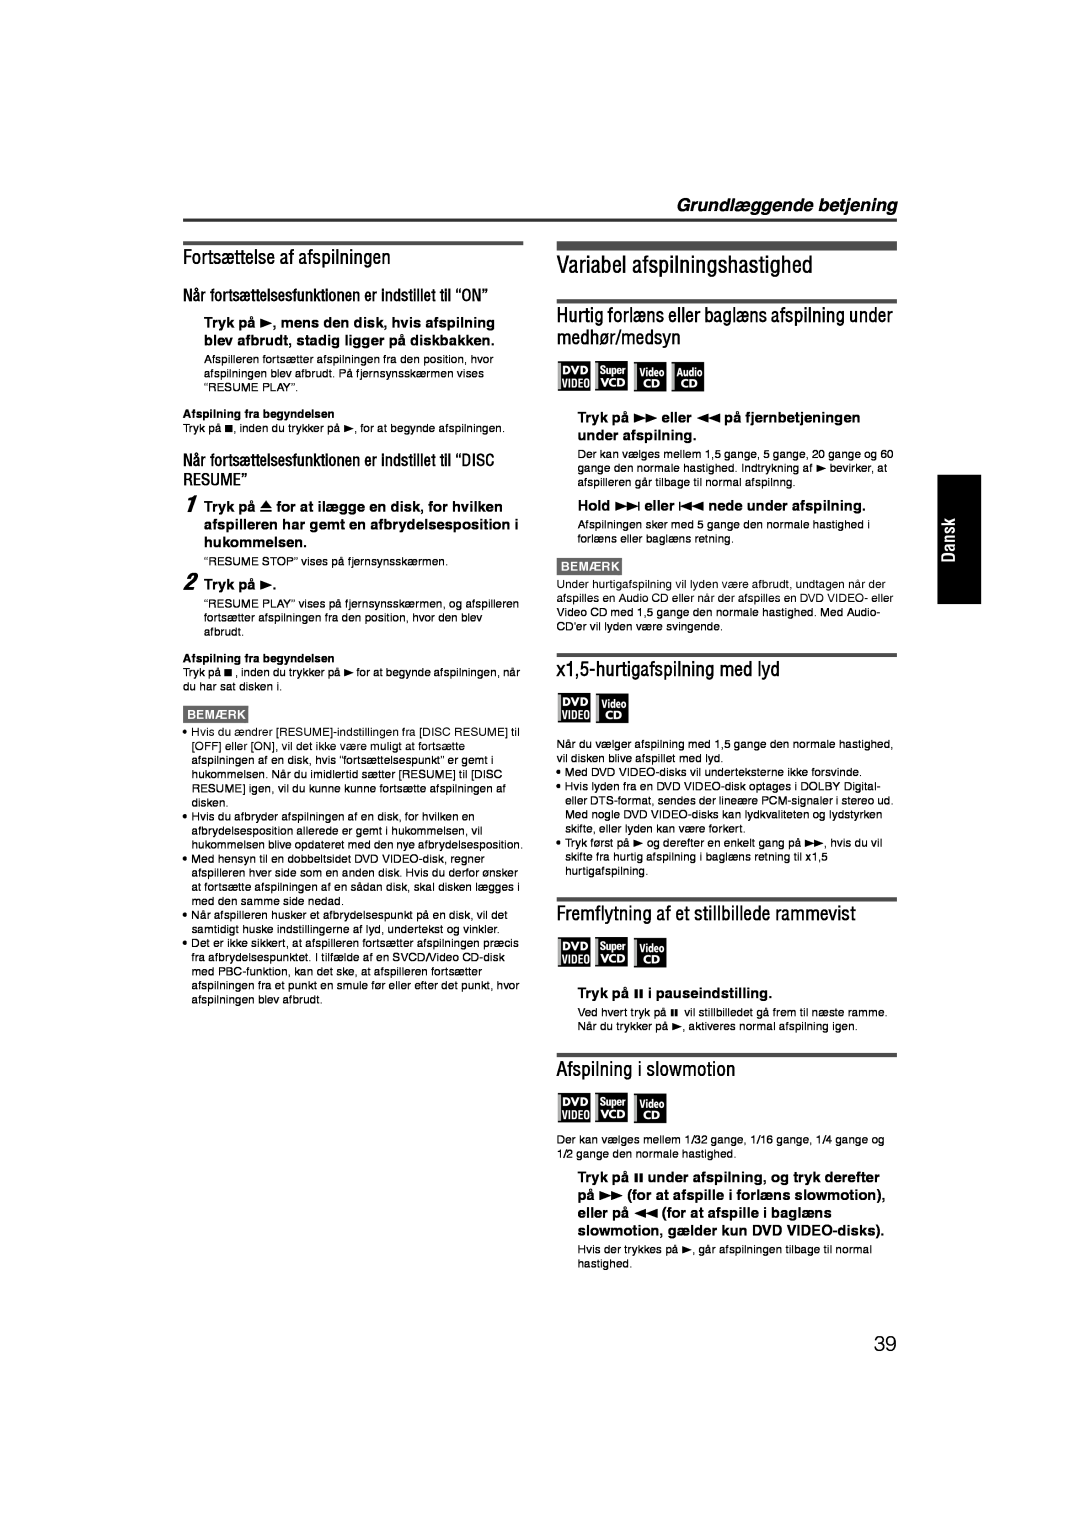 JVC RX-ES1SL Variabel afspilningshastighed, Fortsættelse af afspilningen, x1,5-hurtigafspilningmed lyd, Resume”, Dansk 